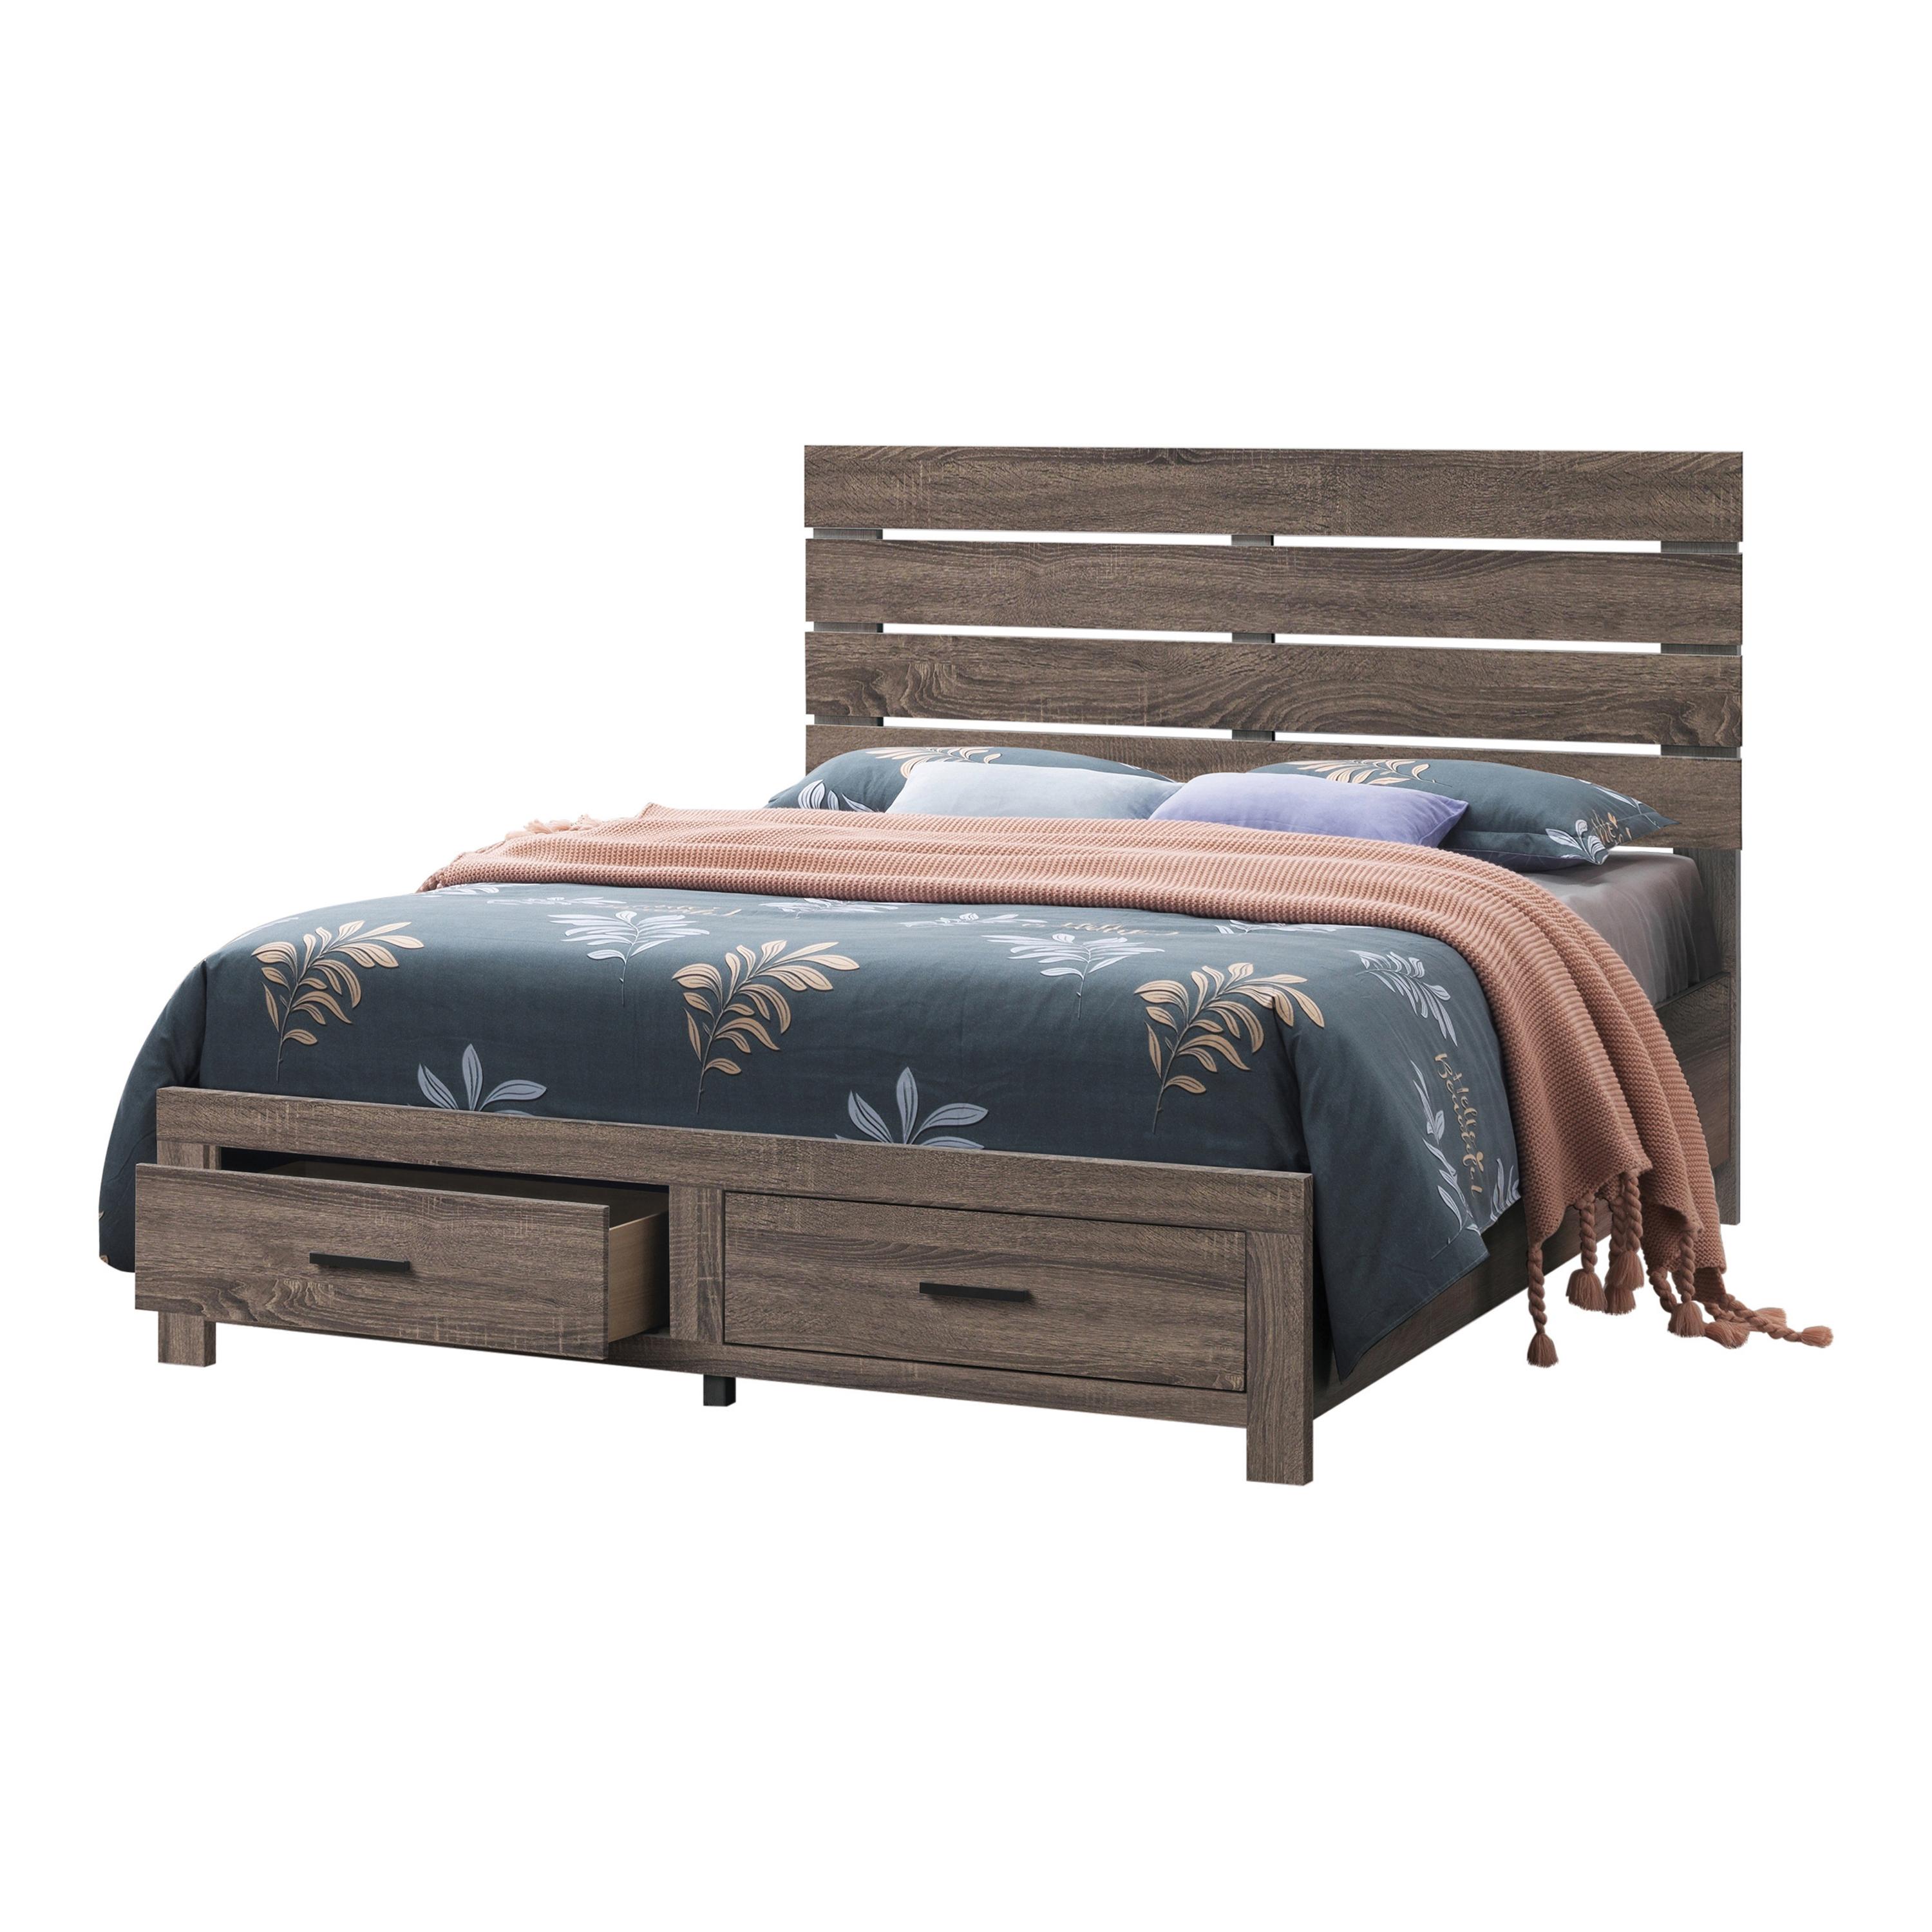 

    
Rustic Barrel Oak Wood Queen Storage Bedroom Set 3pcs Coaster 207040Q Brantford
